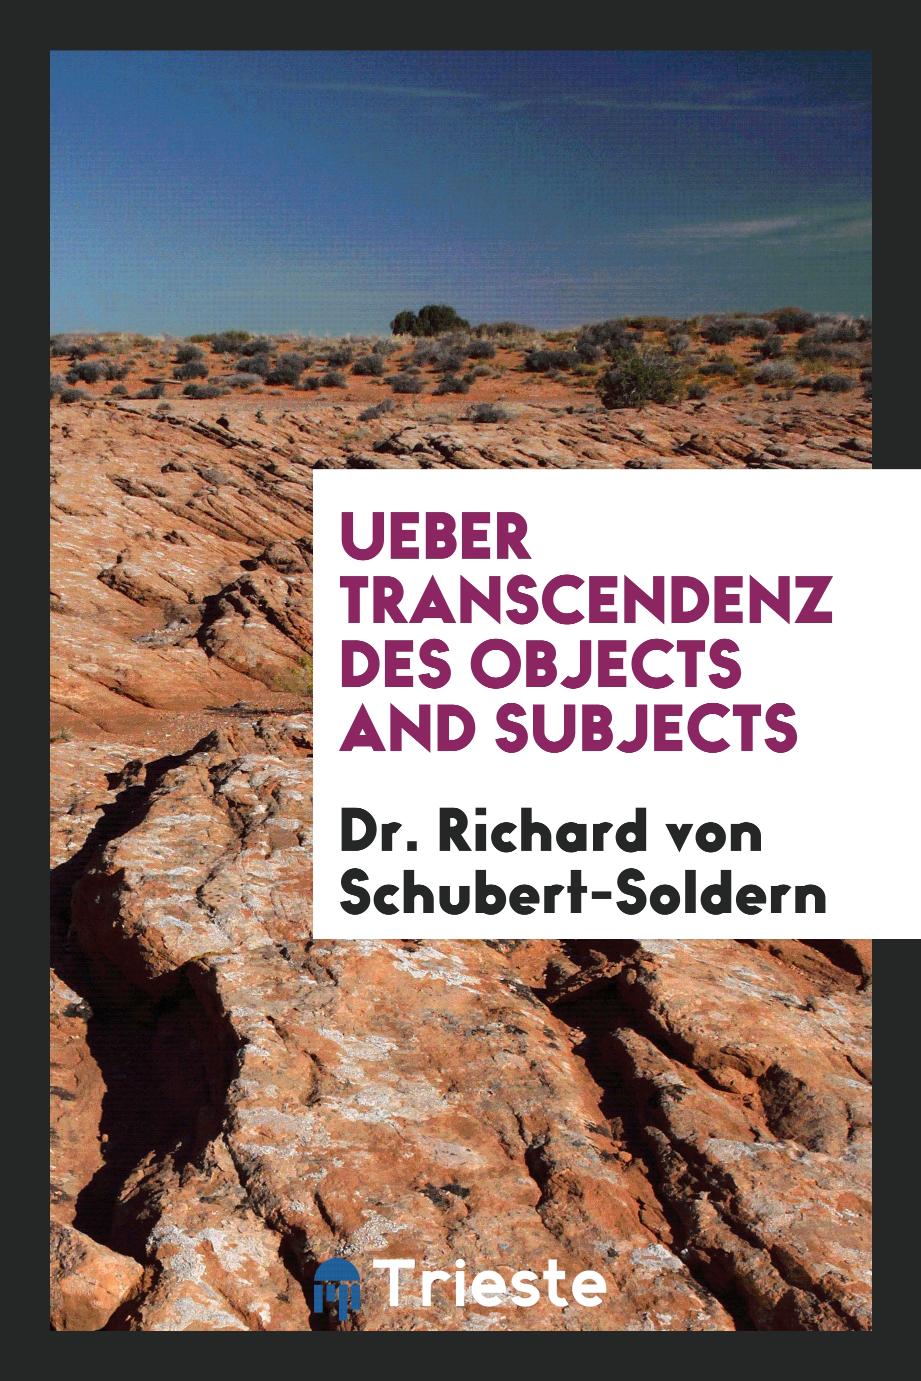 Dr. Richard von Schubert-Soldern - Ueber Transcendenz des Objects and Subjects